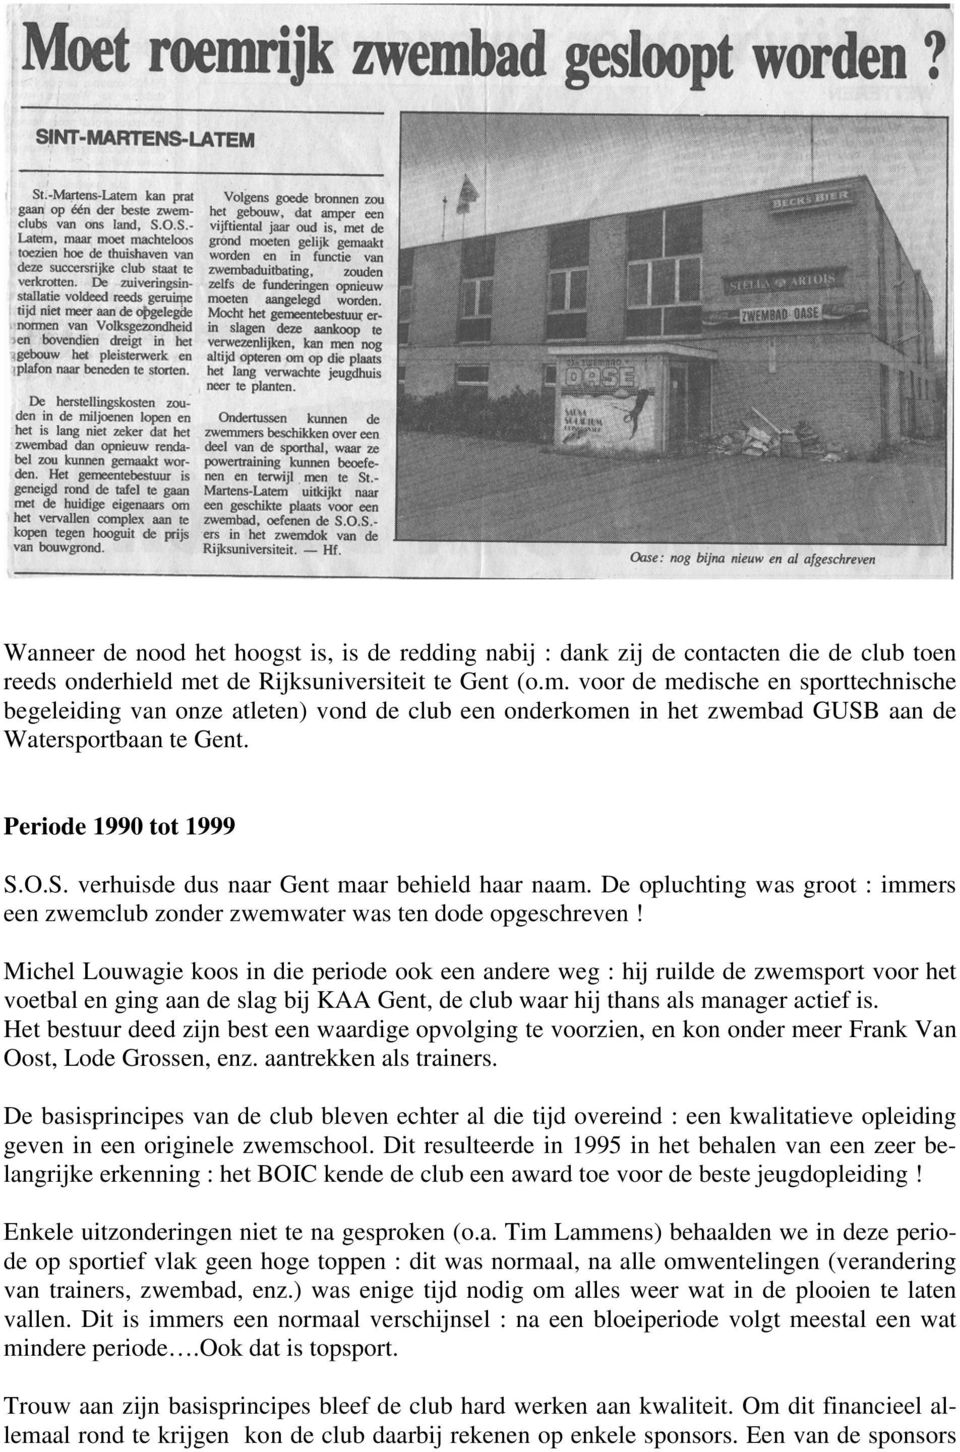 Periode 1990 tot 1999 S.O.S. verhuisde dus naar Gent maar behield haar naam. De opluchting was groot : immers een zwemclub zonder zwemwater was ten dode opgeschreven!